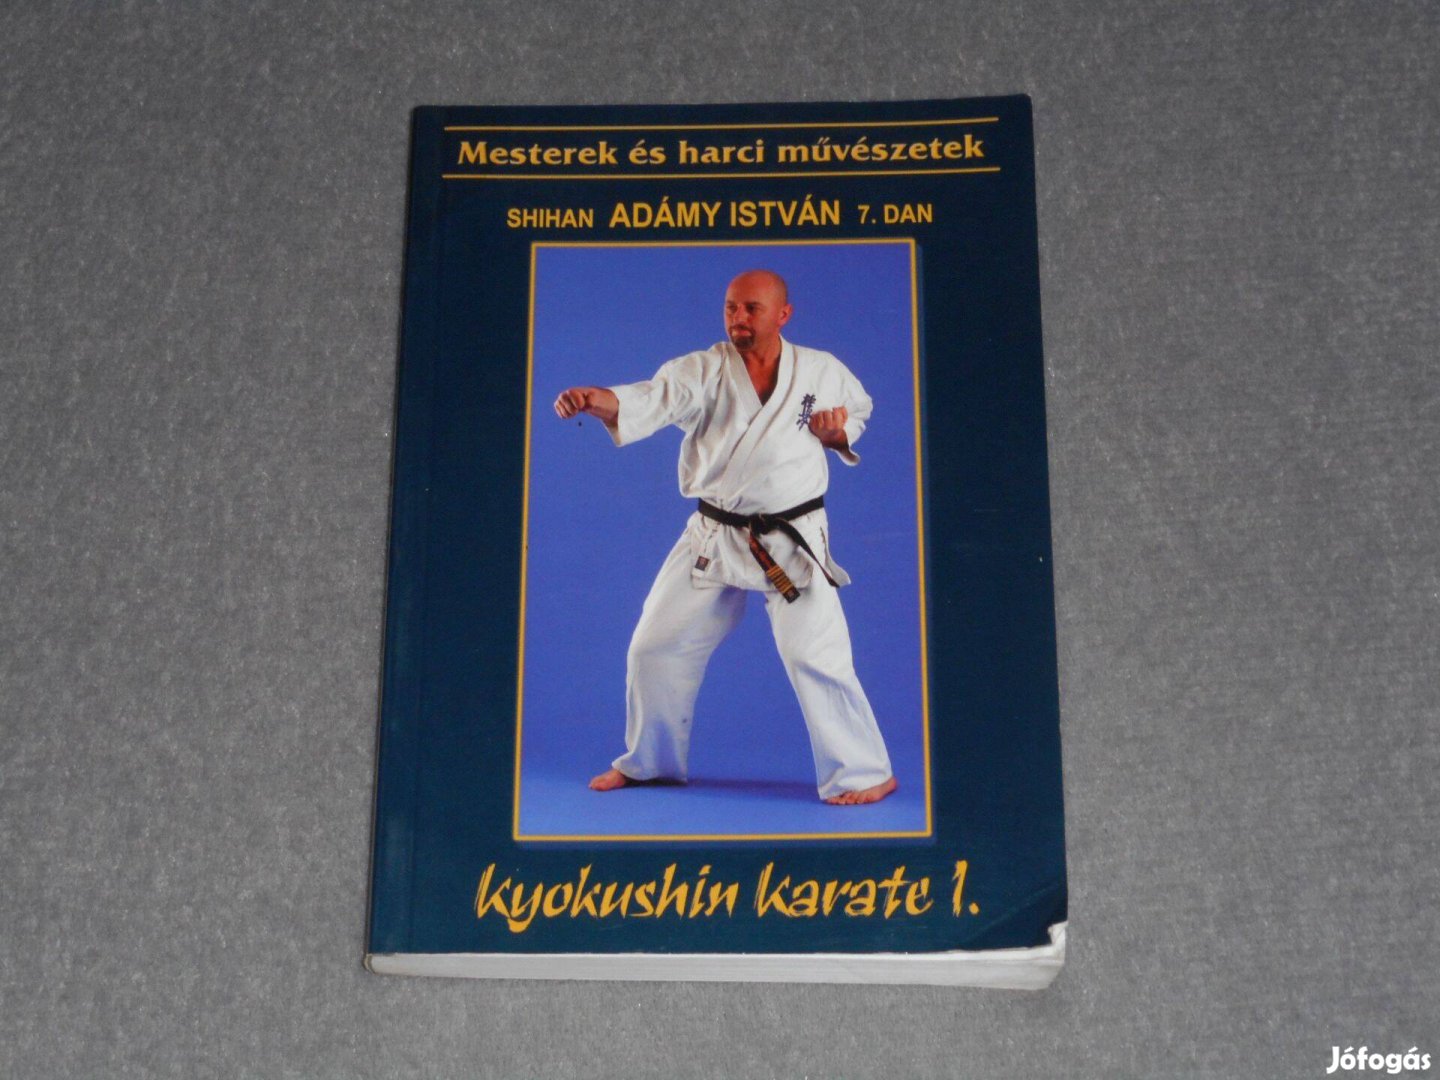 Adámy István - Kyokushin karate I. 1. - Mesterek és harci művészetek